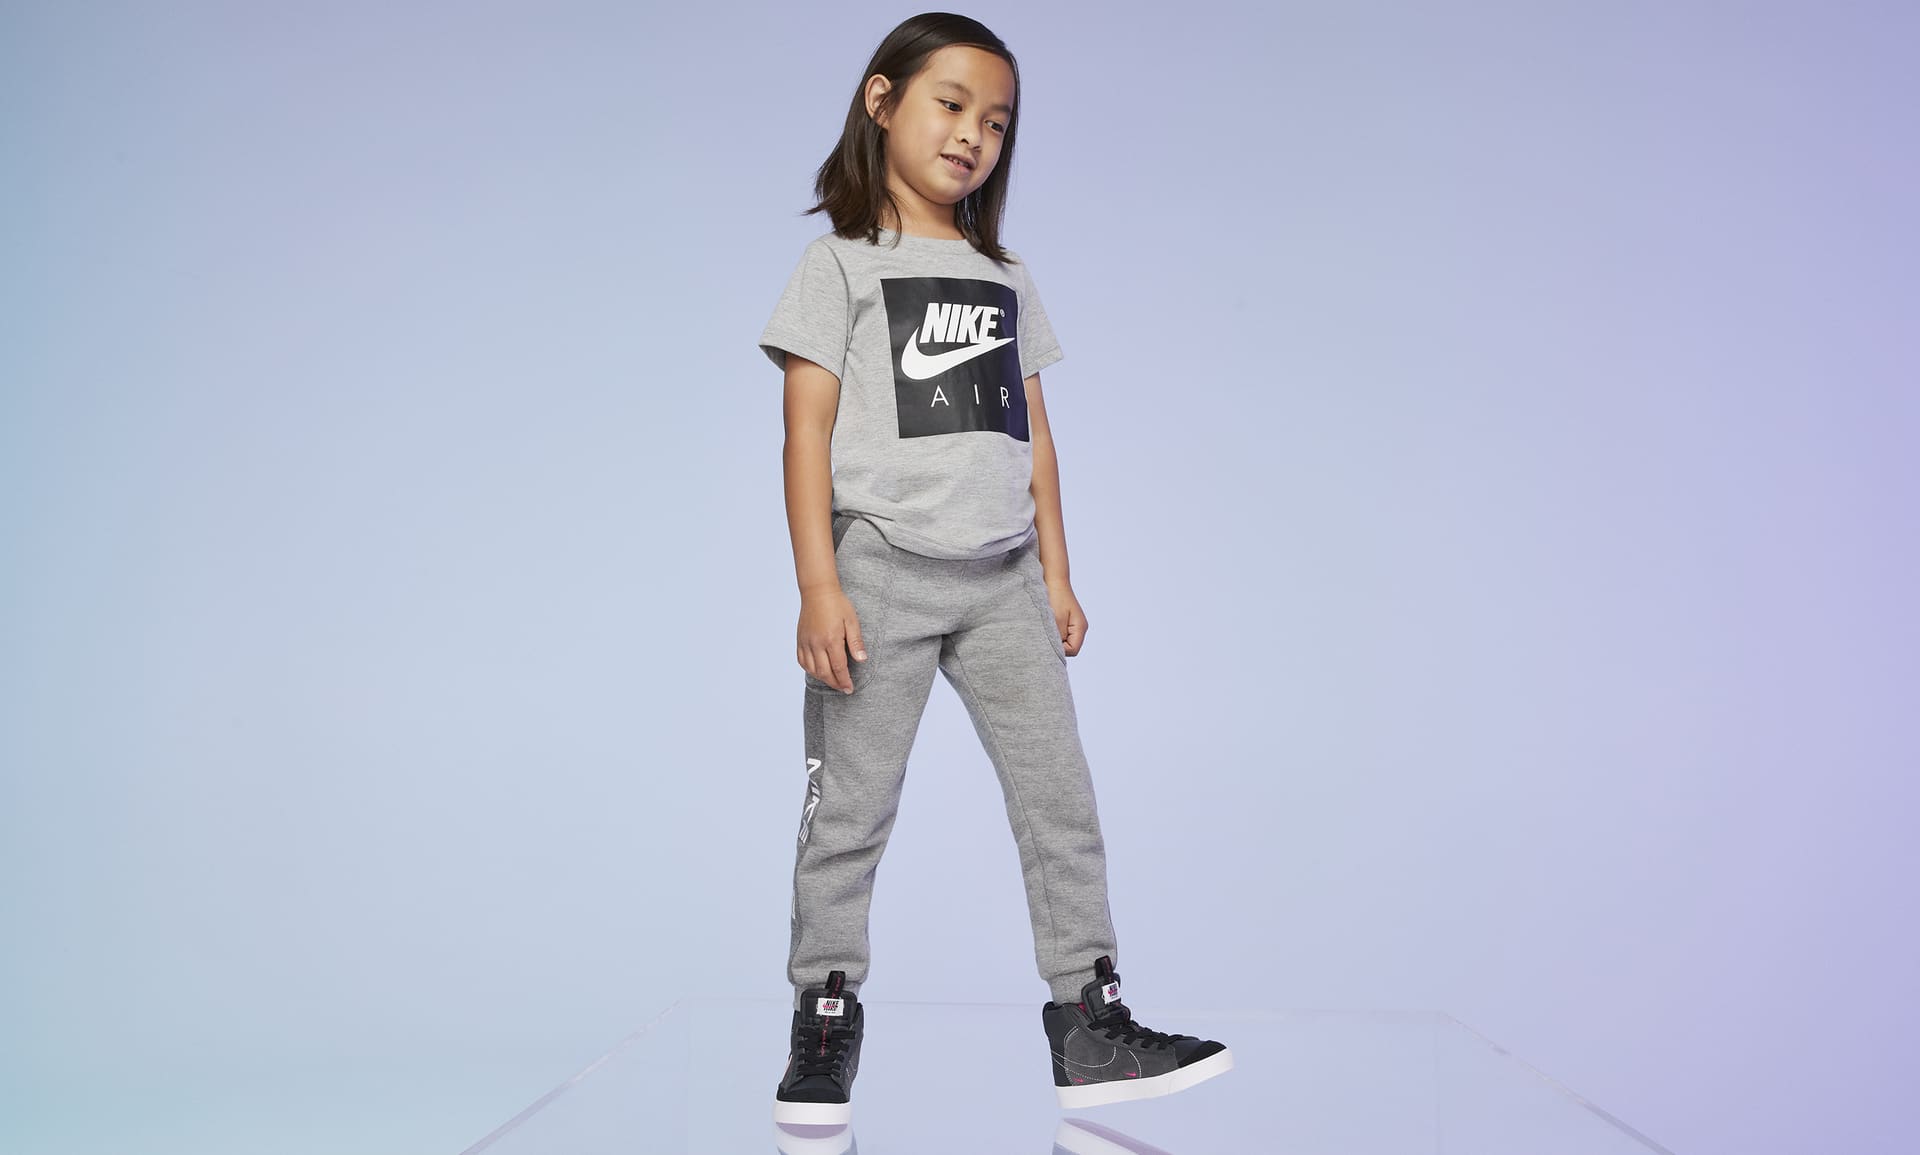 Nike Blazer Mid' 77 Little Kids' Shoes